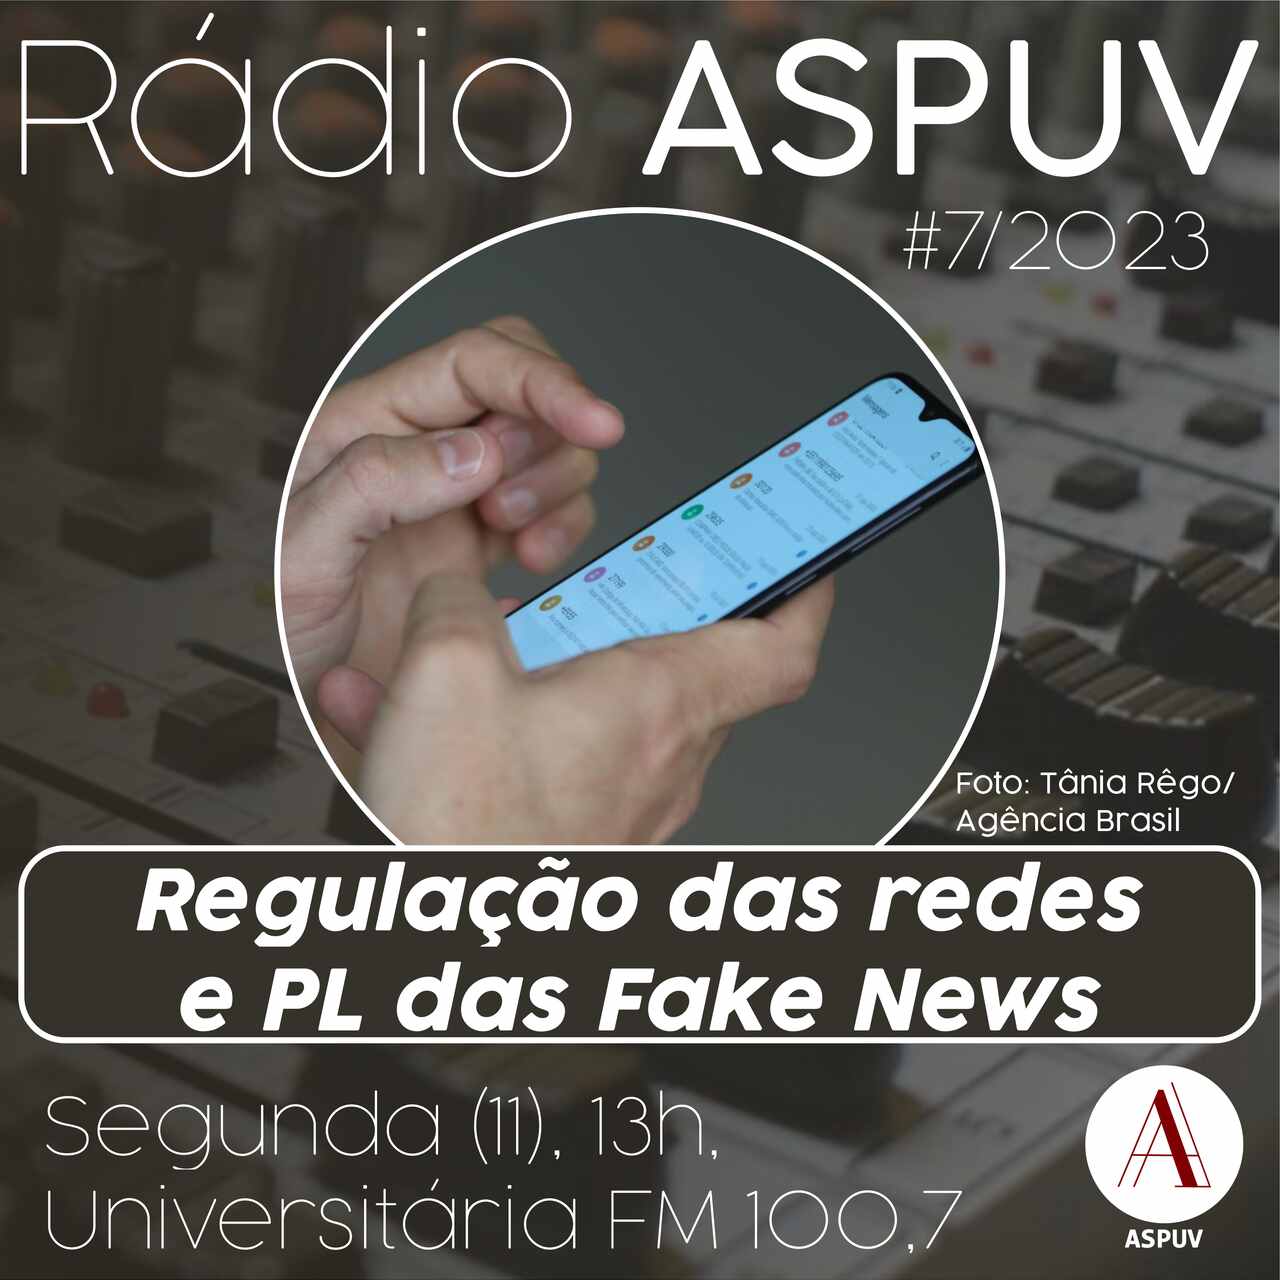 Rádio ASPUV #7/23 Regulação das redes e o PL das Fake News